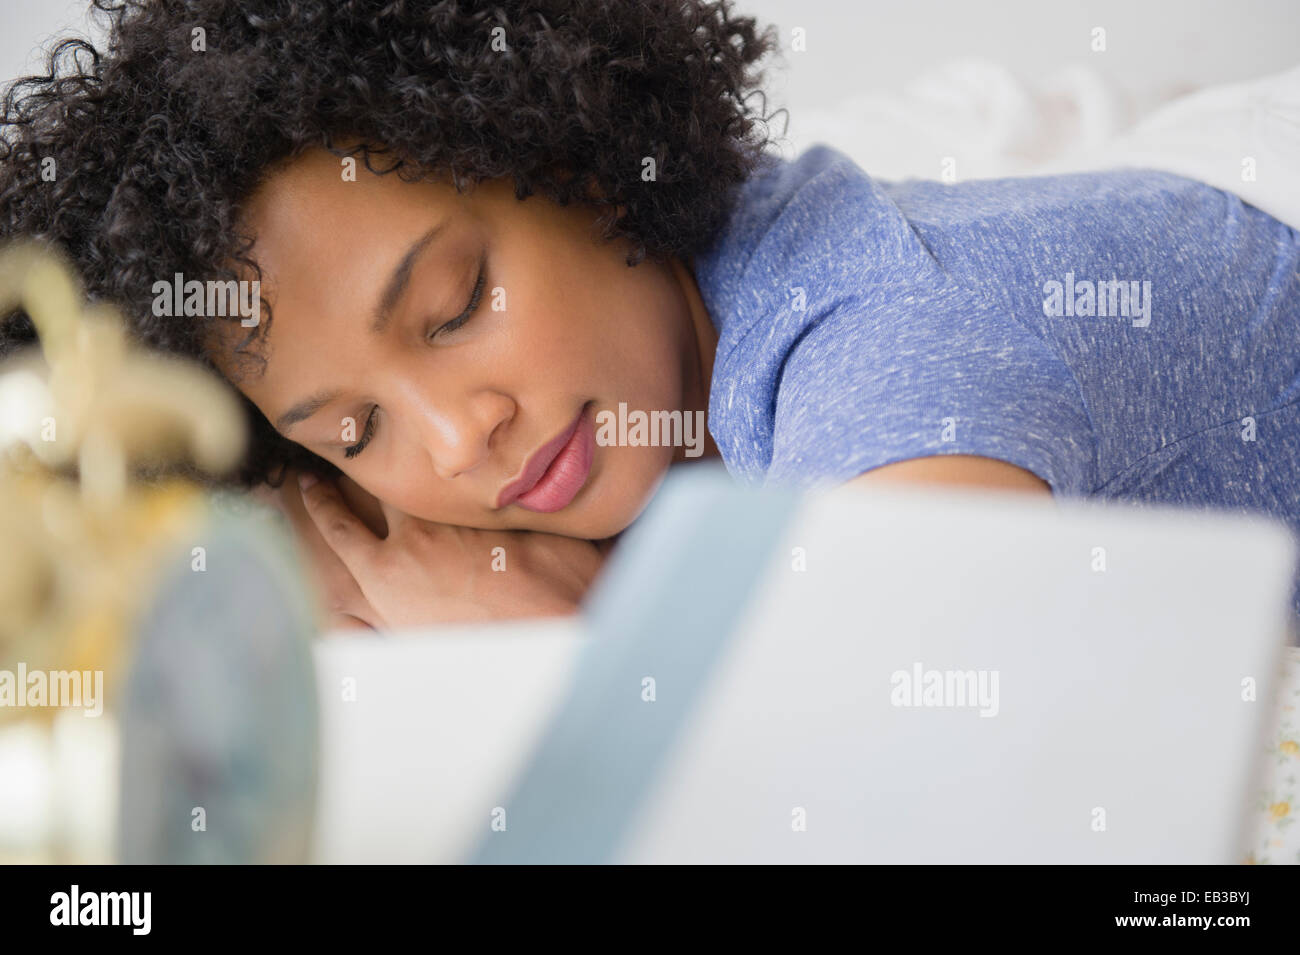 Frau schläft im Bett Stockfoto